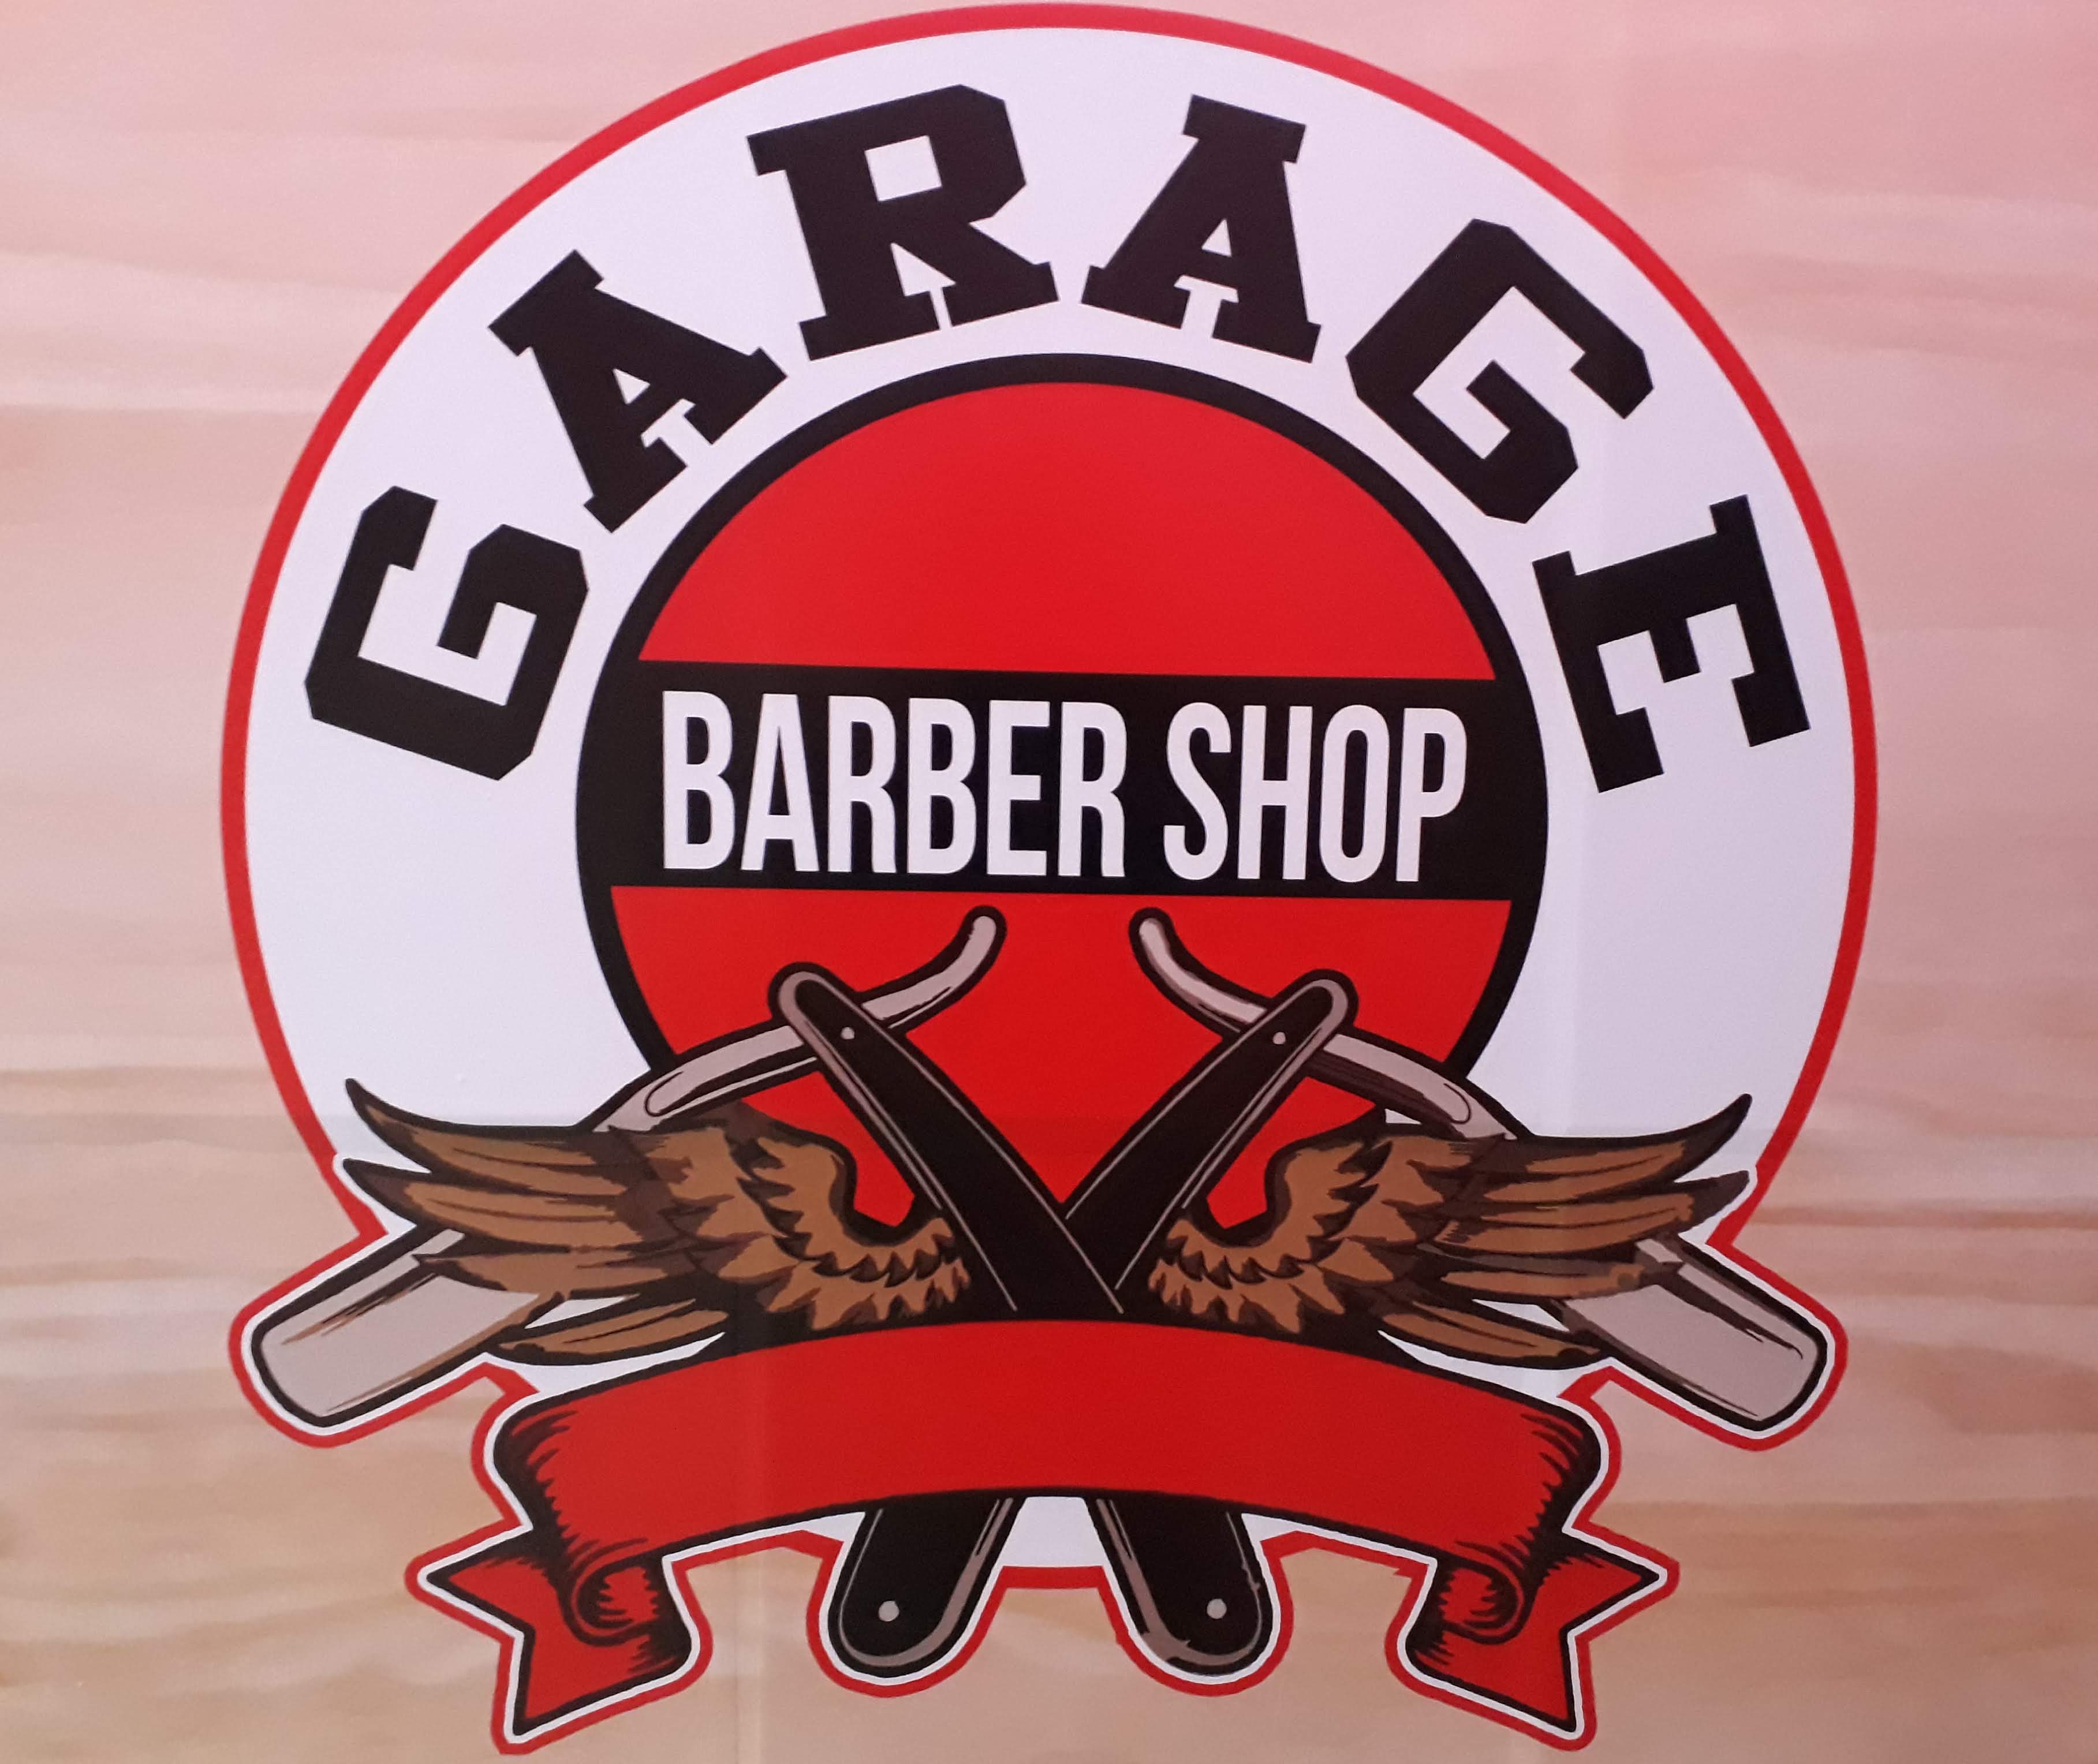 Garage Barber Shop